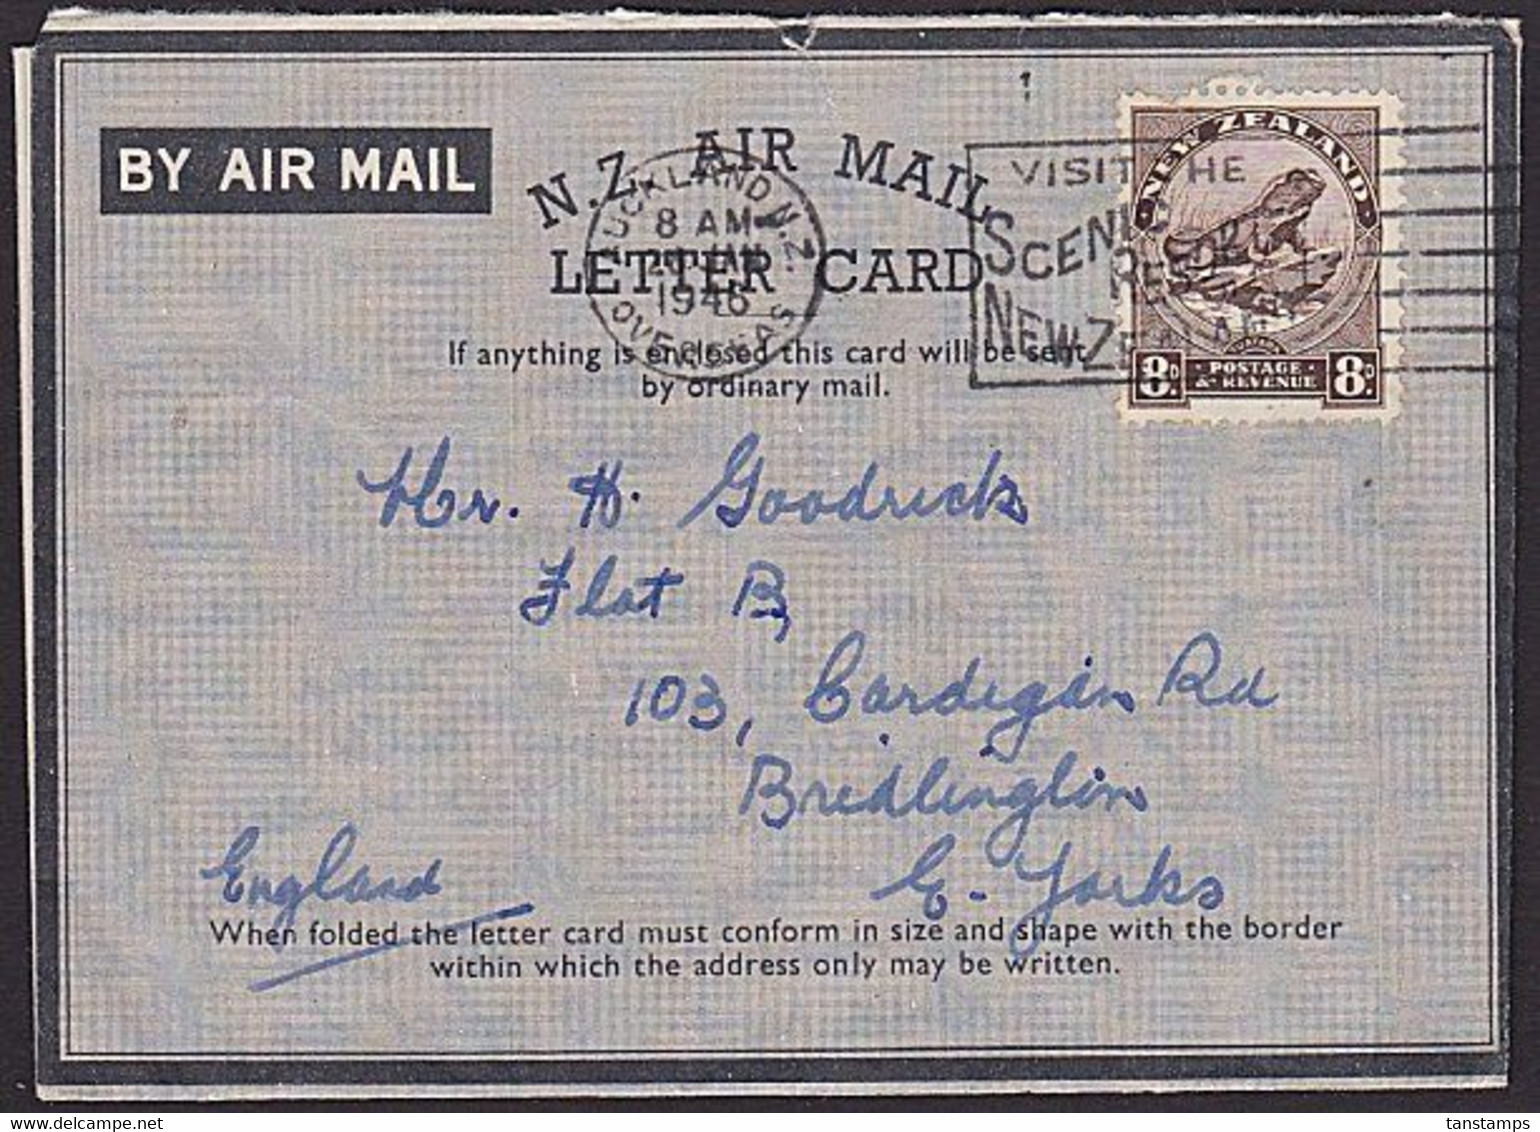 NEW ZEALAND AEROGRAM LETTER CARD TUATARA 8d RATE TO UK TOURIST SLOGAN 1946 - Brieven En Documenten